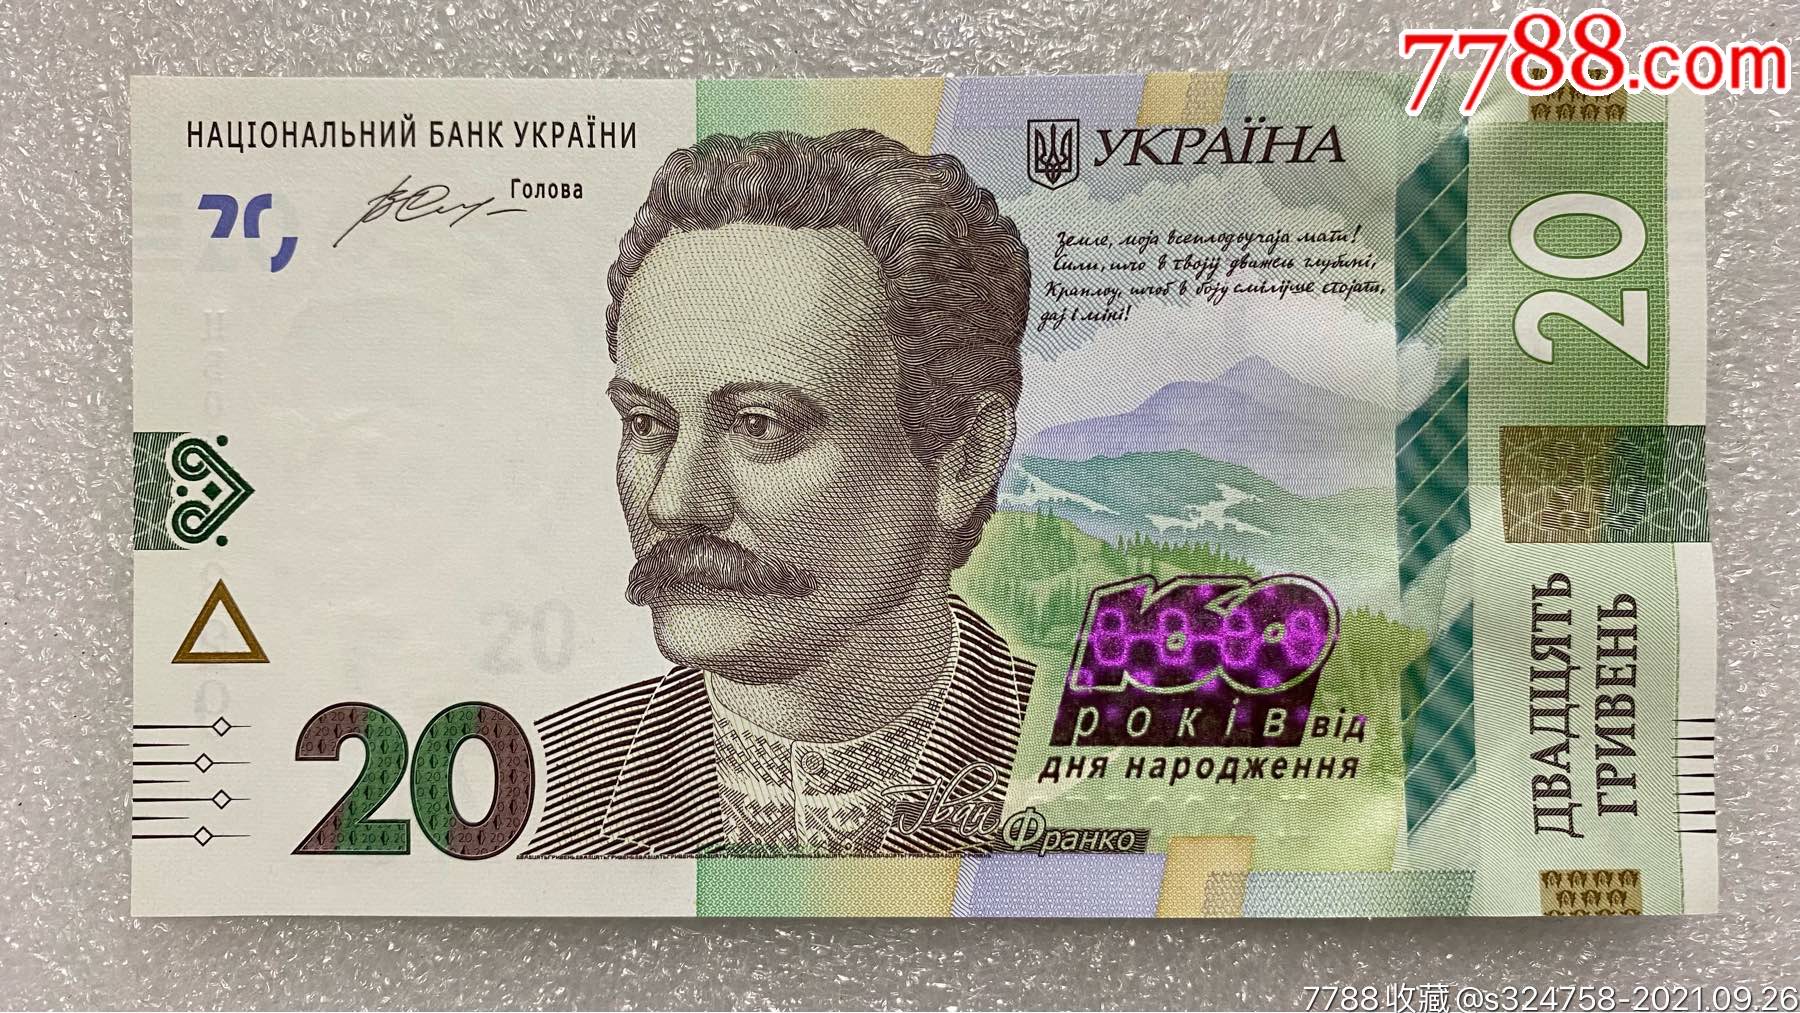 乌克兰2016年版发行20格里夫纳纸币纪念钞